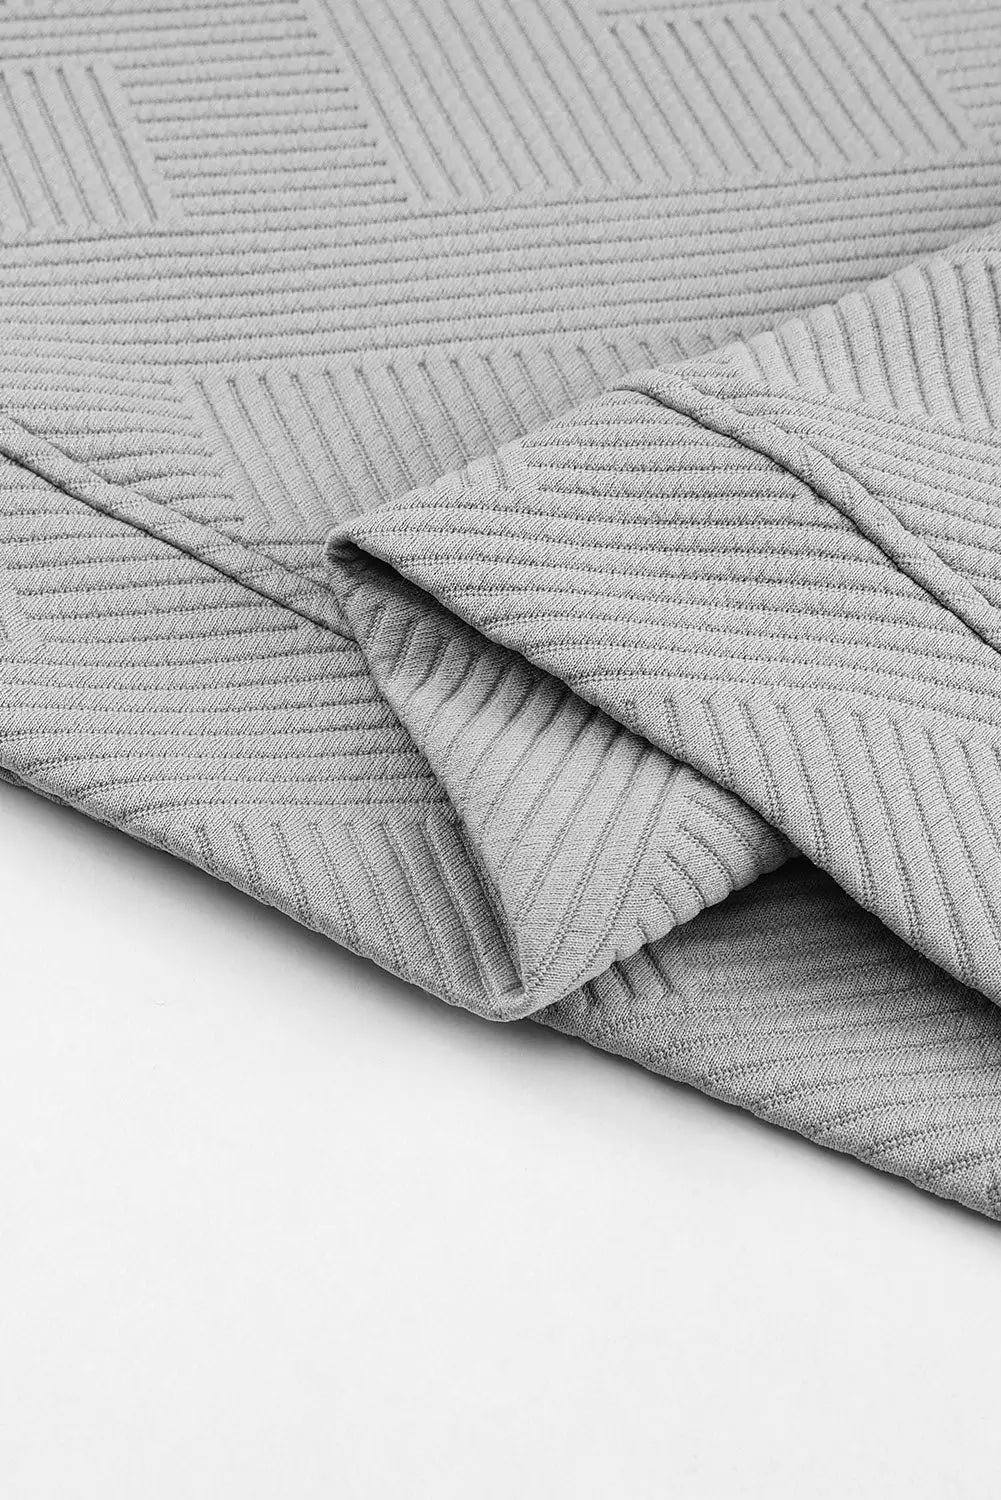 Gray textured long sleeve top and drawstring shorts set -